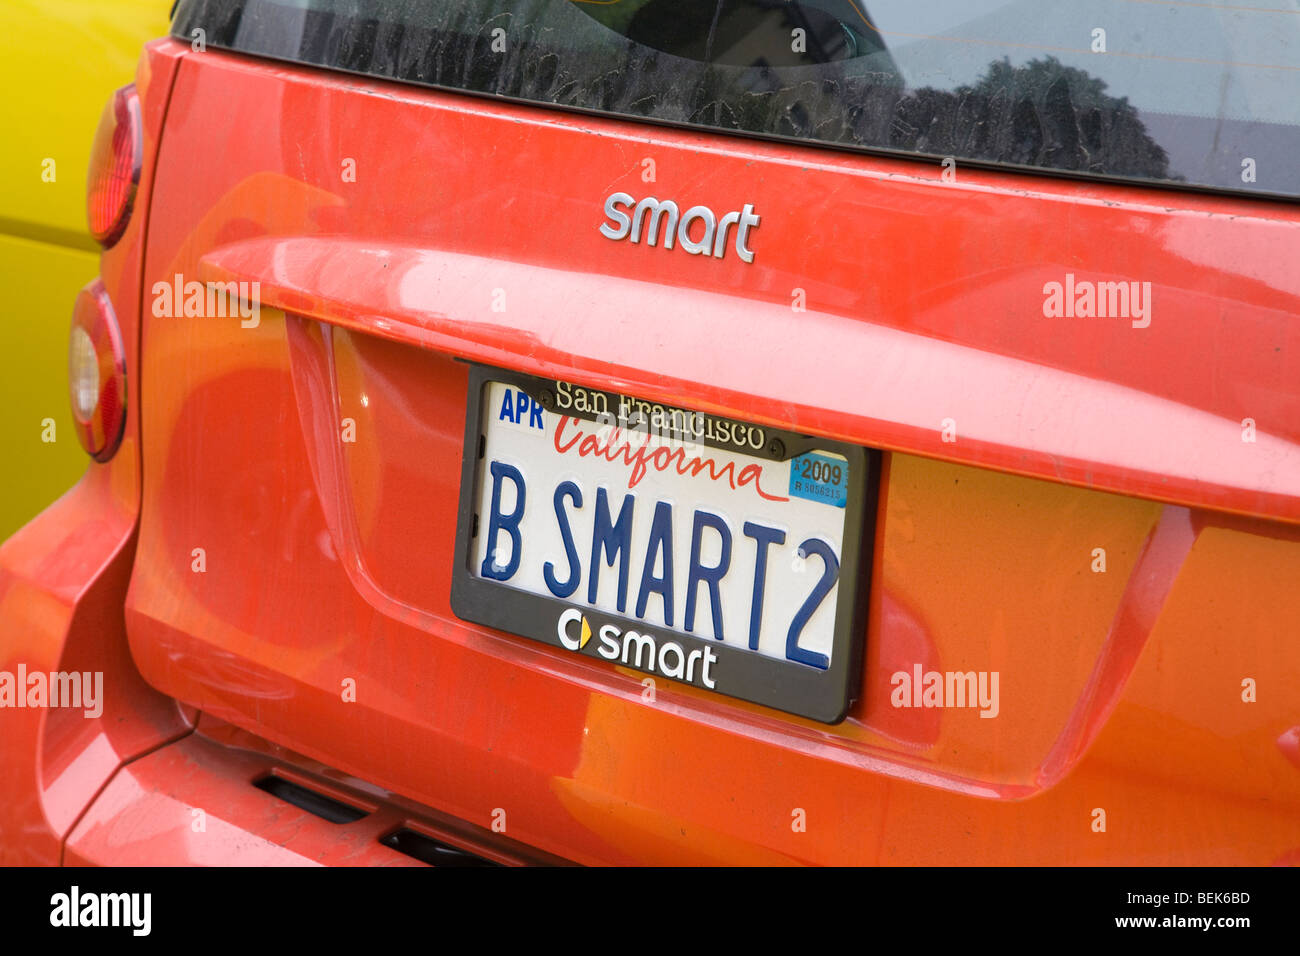 B SMART2 (Ser inteligente) Placa de licencia. Lombard Street, un coche de rally del club. San Francisco, California, EE.UU. Foto de stock